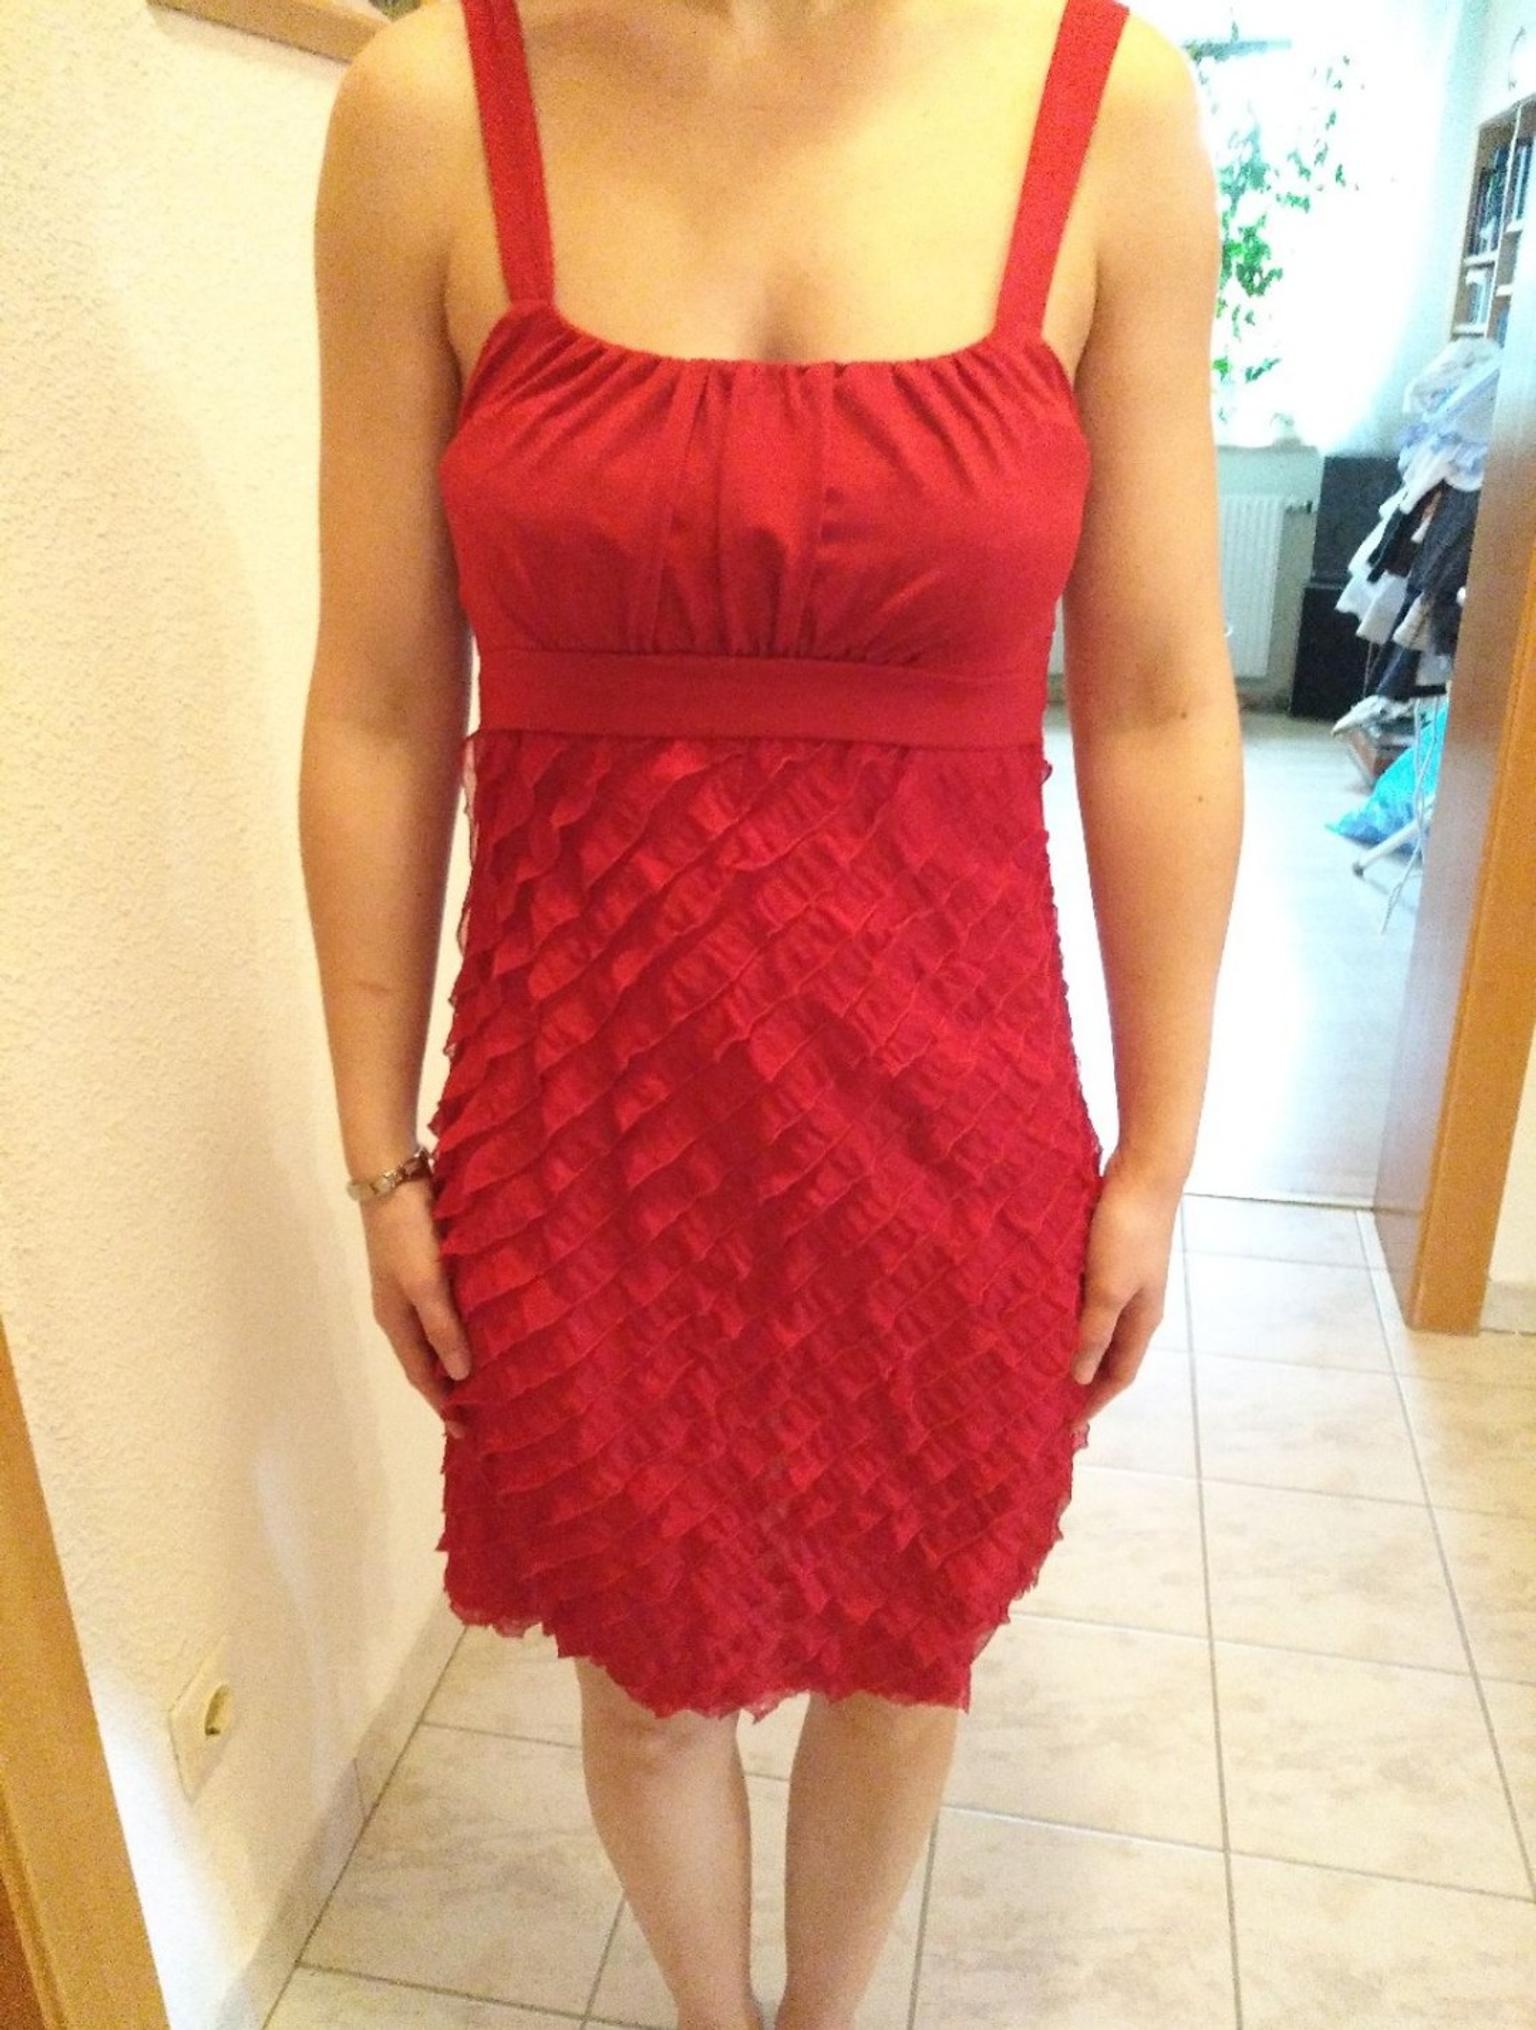 Rotes Sommerkleid Grosse Small In 3312 Zeillern Fur 15 00 Zum Verkauf Shpock De